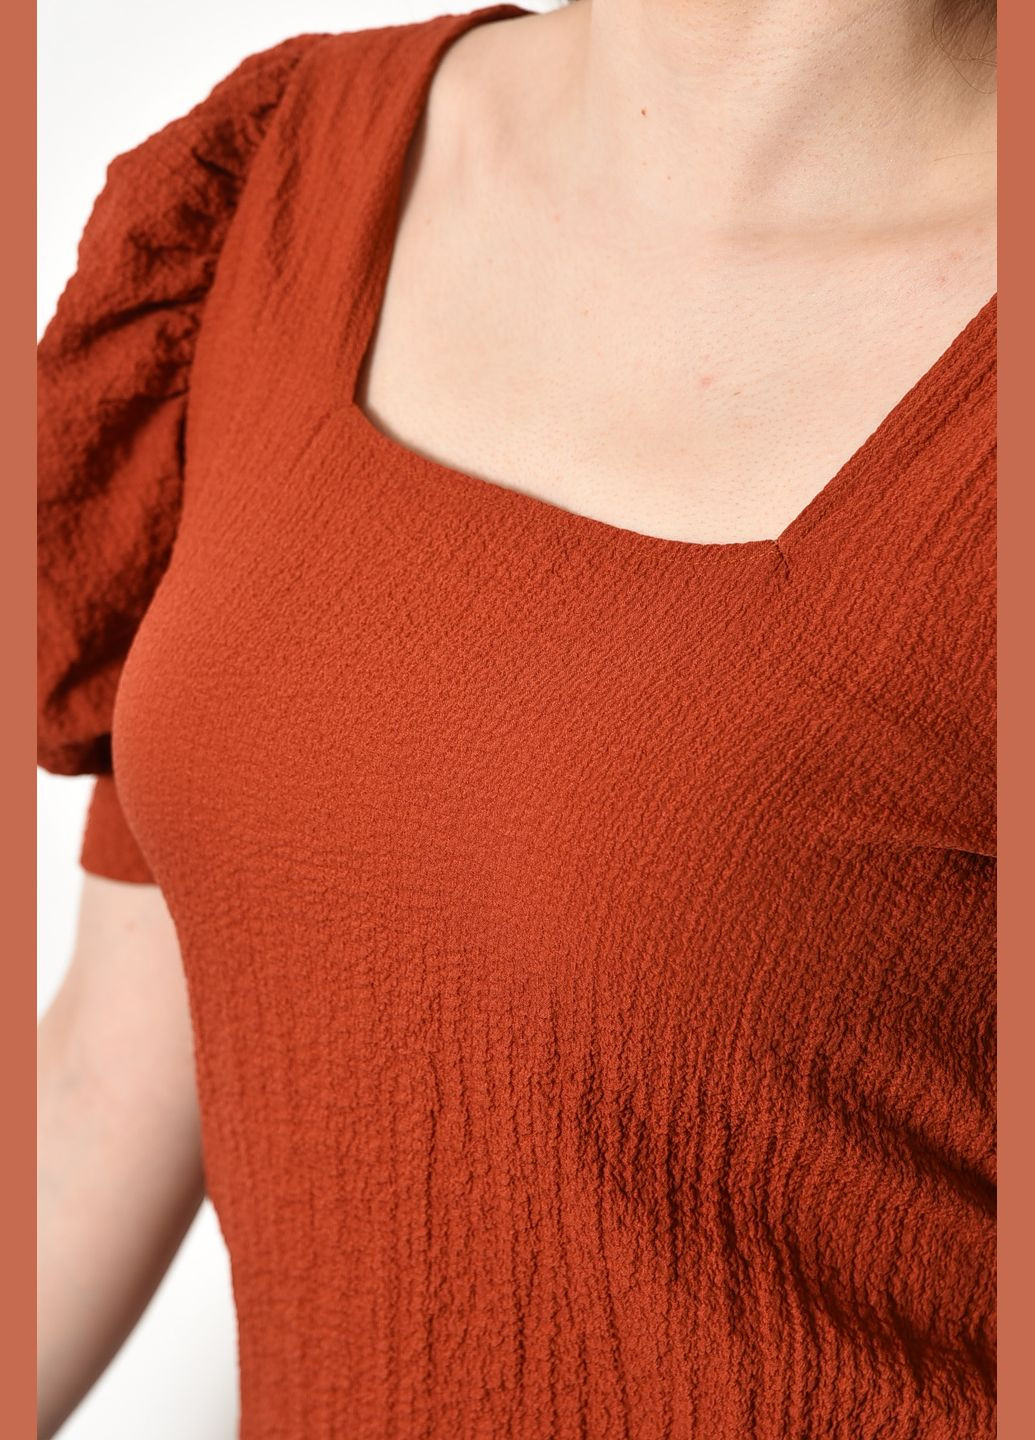 Теракотова блуза жіноча з коротким рукавом теракотового кольору з баскою Let's Shop